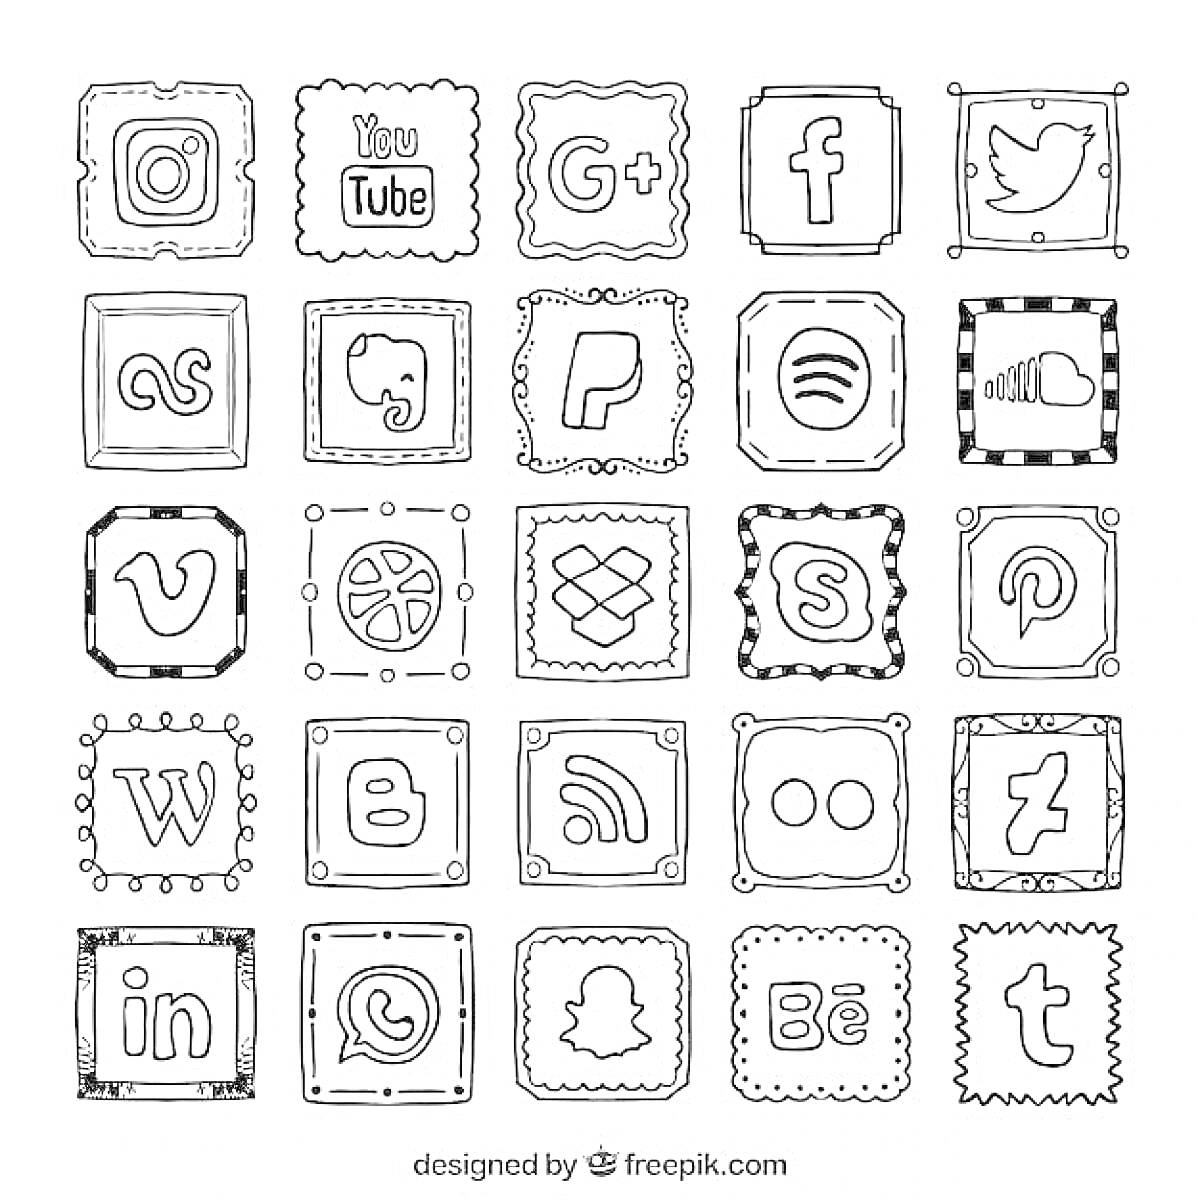 Раскраска Иконки социальных сетей и программ в декоративных рамках для раскрашивания